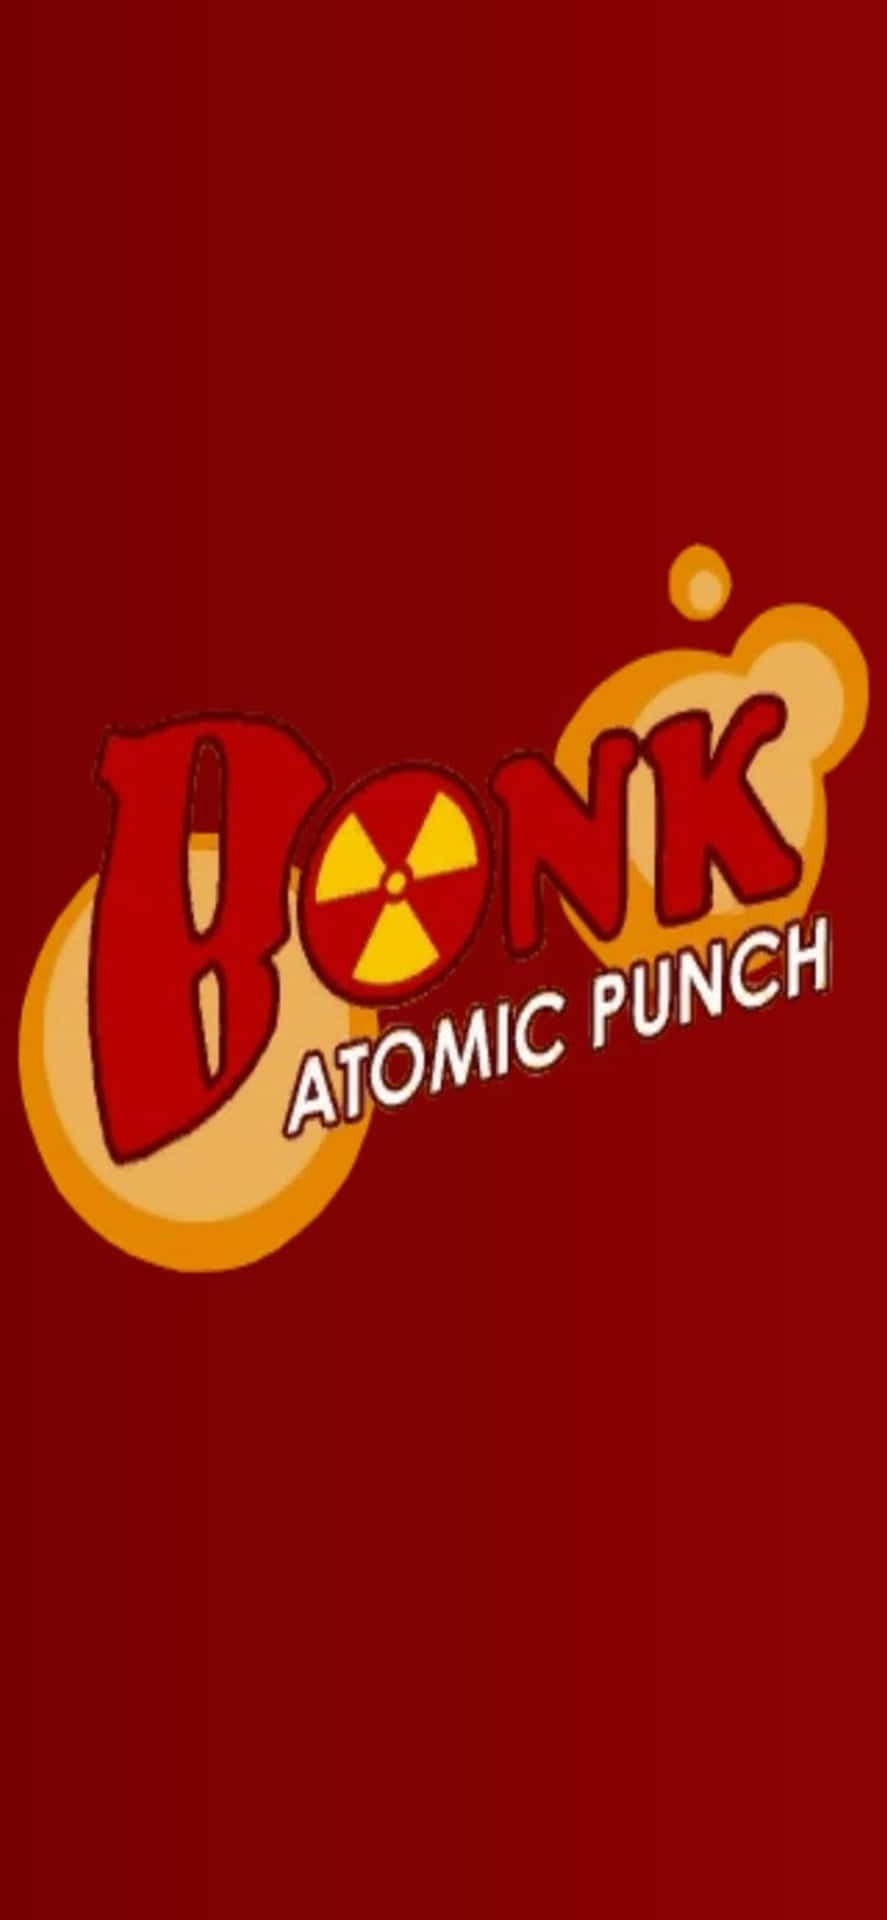 bonk atomic punch - screenshot